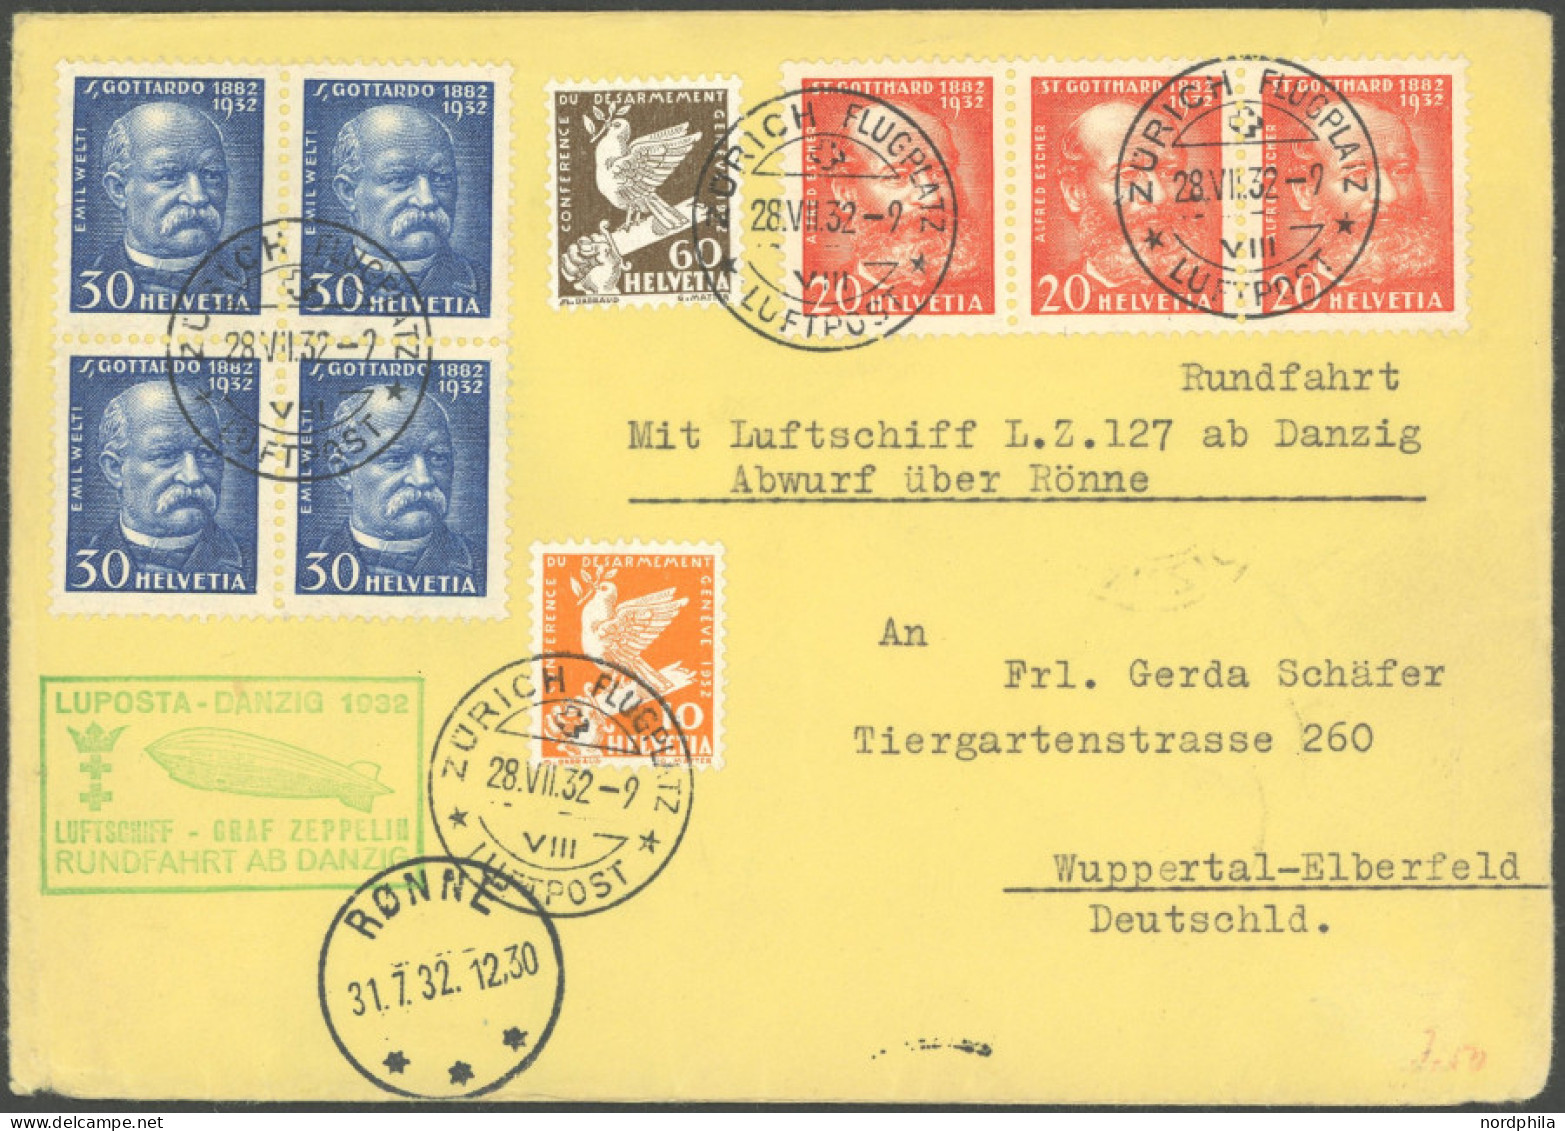 ZULEITUNGSPOST 170Aa BRIEF, Schweiz: 1932, Luposta-Rundfahrt, Abwurf Rönne, Leichte Beförderungsspuren, Prachtbrief - Poste Aérienne & Zeppelin